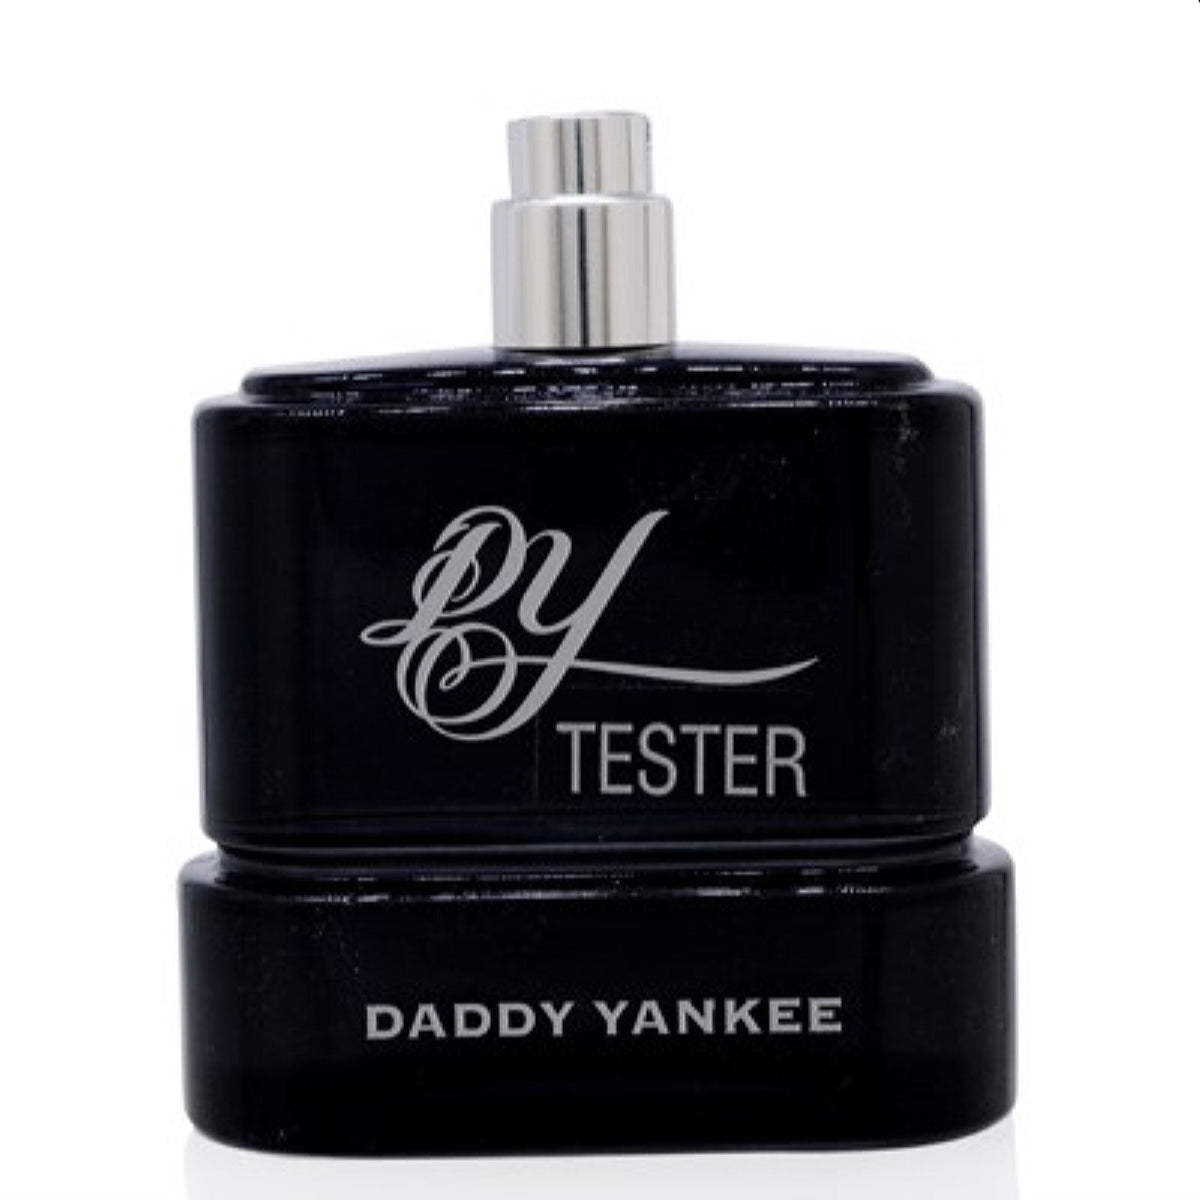 Daddy Yankee Daddy Yankee Edt Spray No Cap Tester 3.4 Oz (100 Ml) For Men 35021794